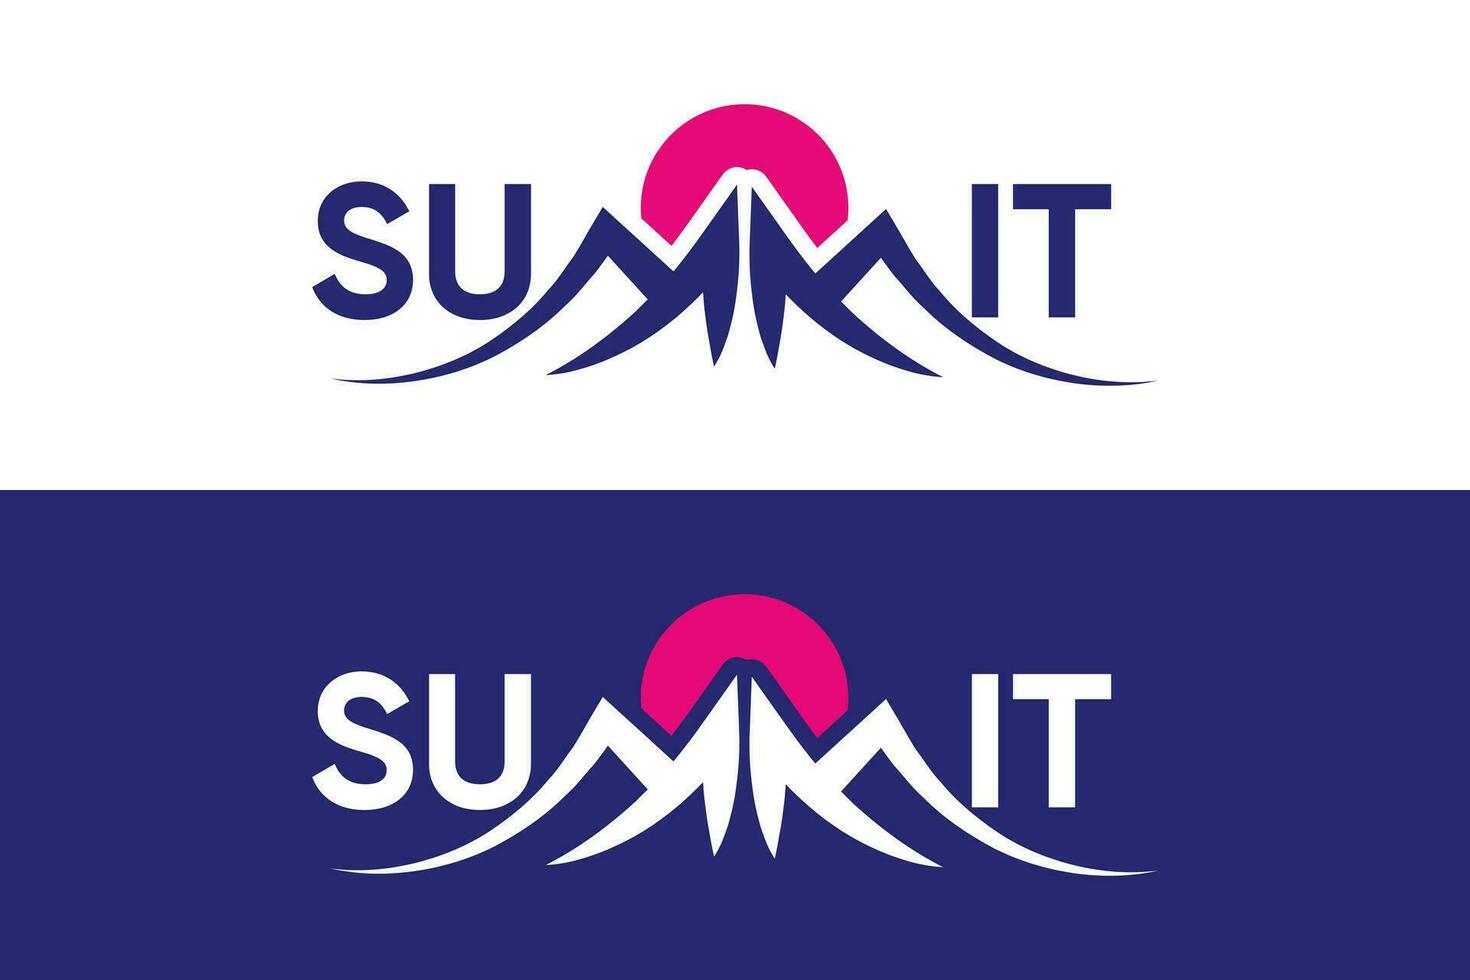 minimal et professionnel lettre sommet vecteur logo conception